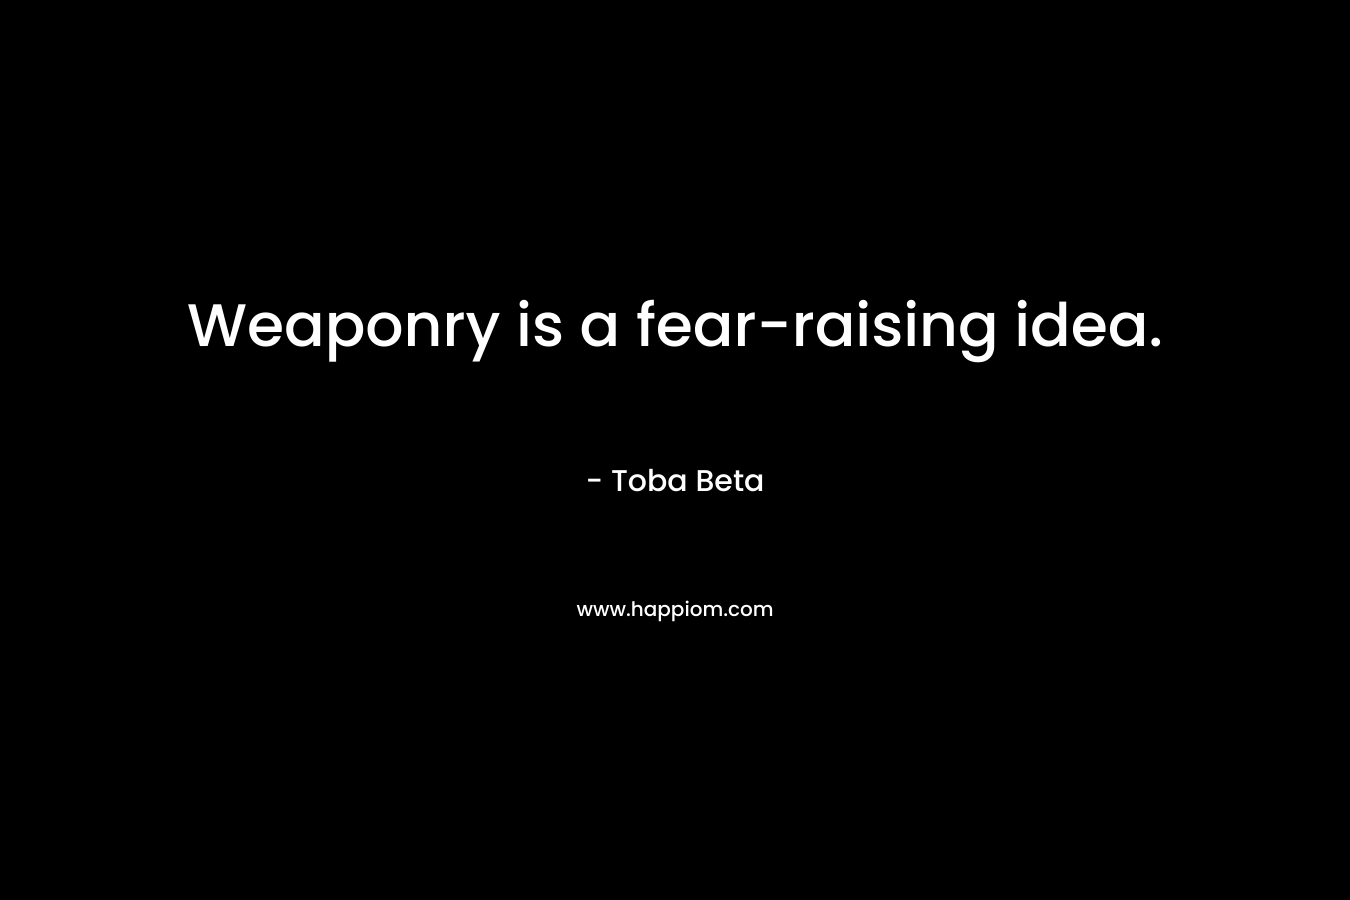 Weaponry is a fear-raising idea.